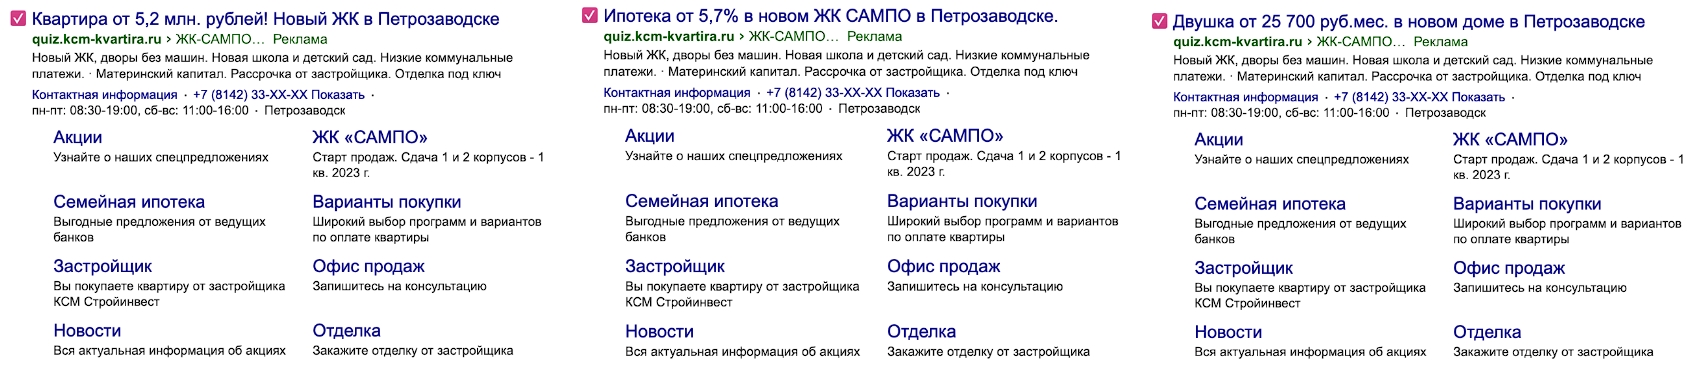 Как мы научились получать лиды для ЖК комфорт-класса по 800 рублей